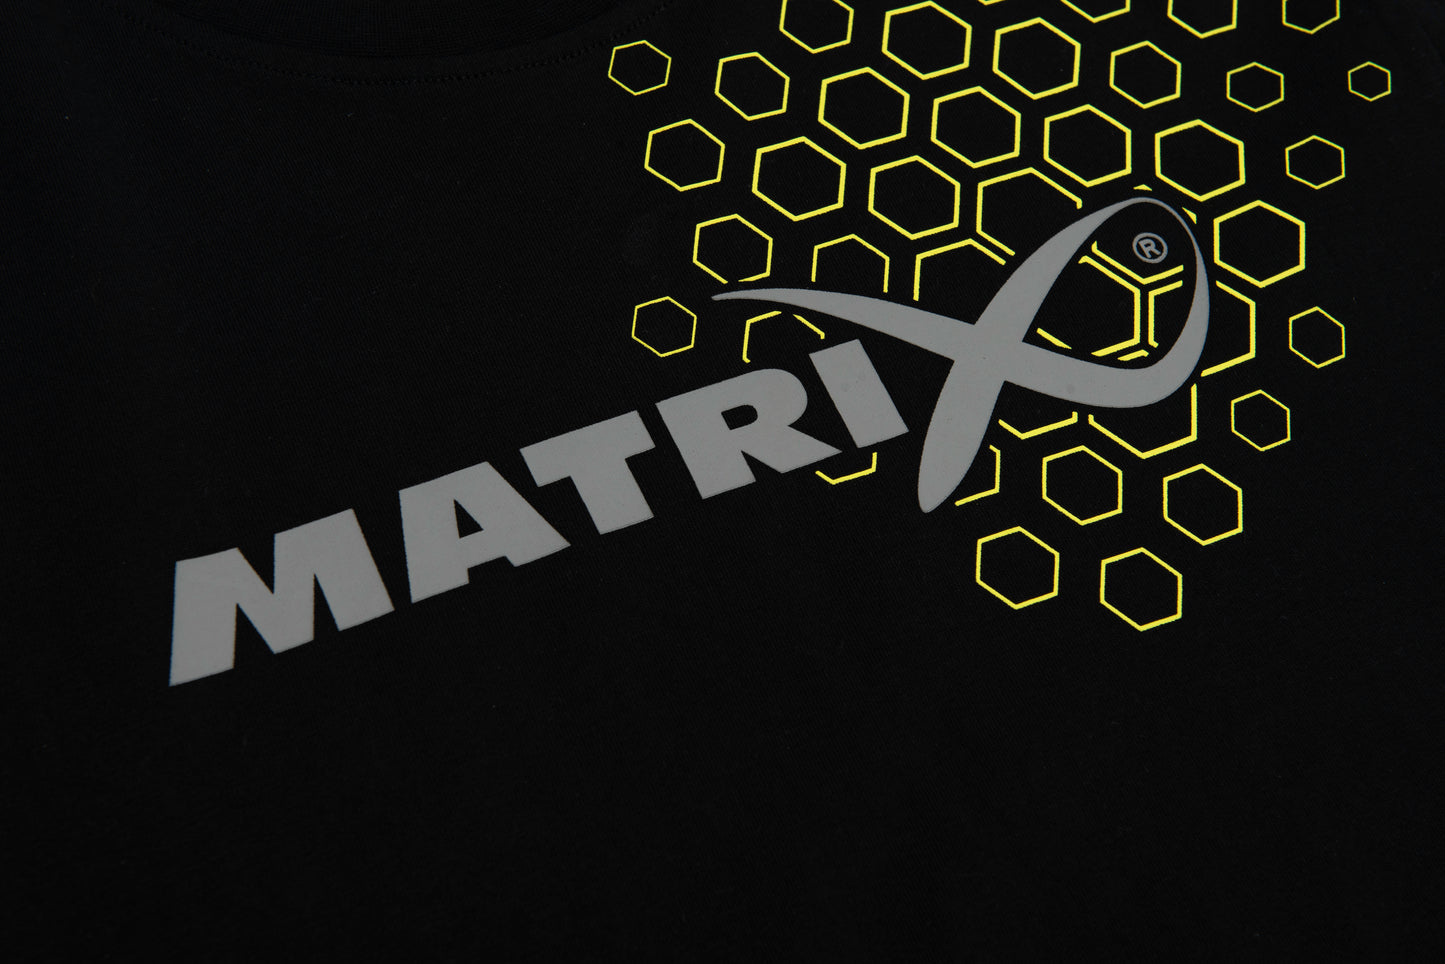 Matrix Black Hex Print T-Shirt